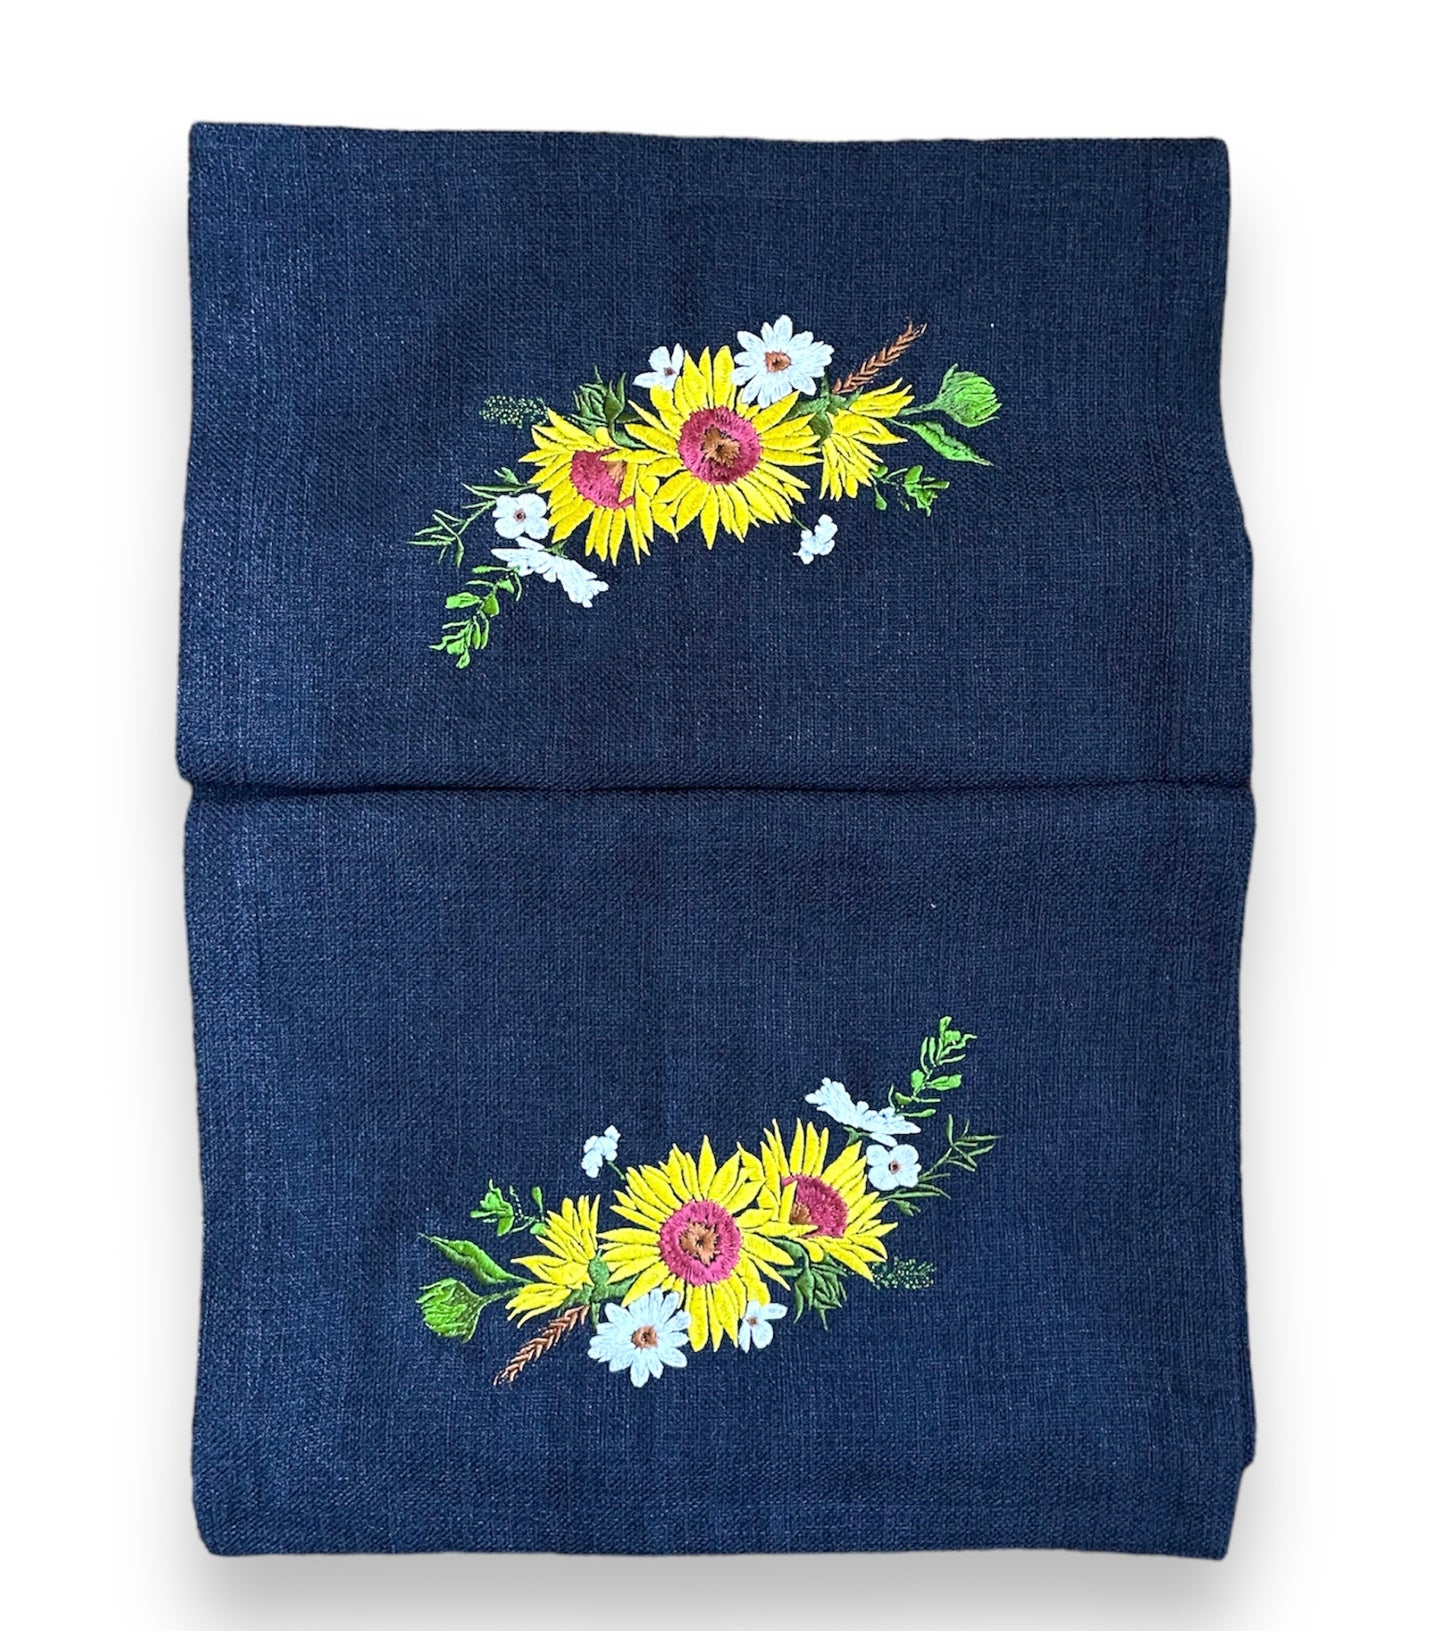 Embroidered Sunflower Burlap Table Runner (Navy)